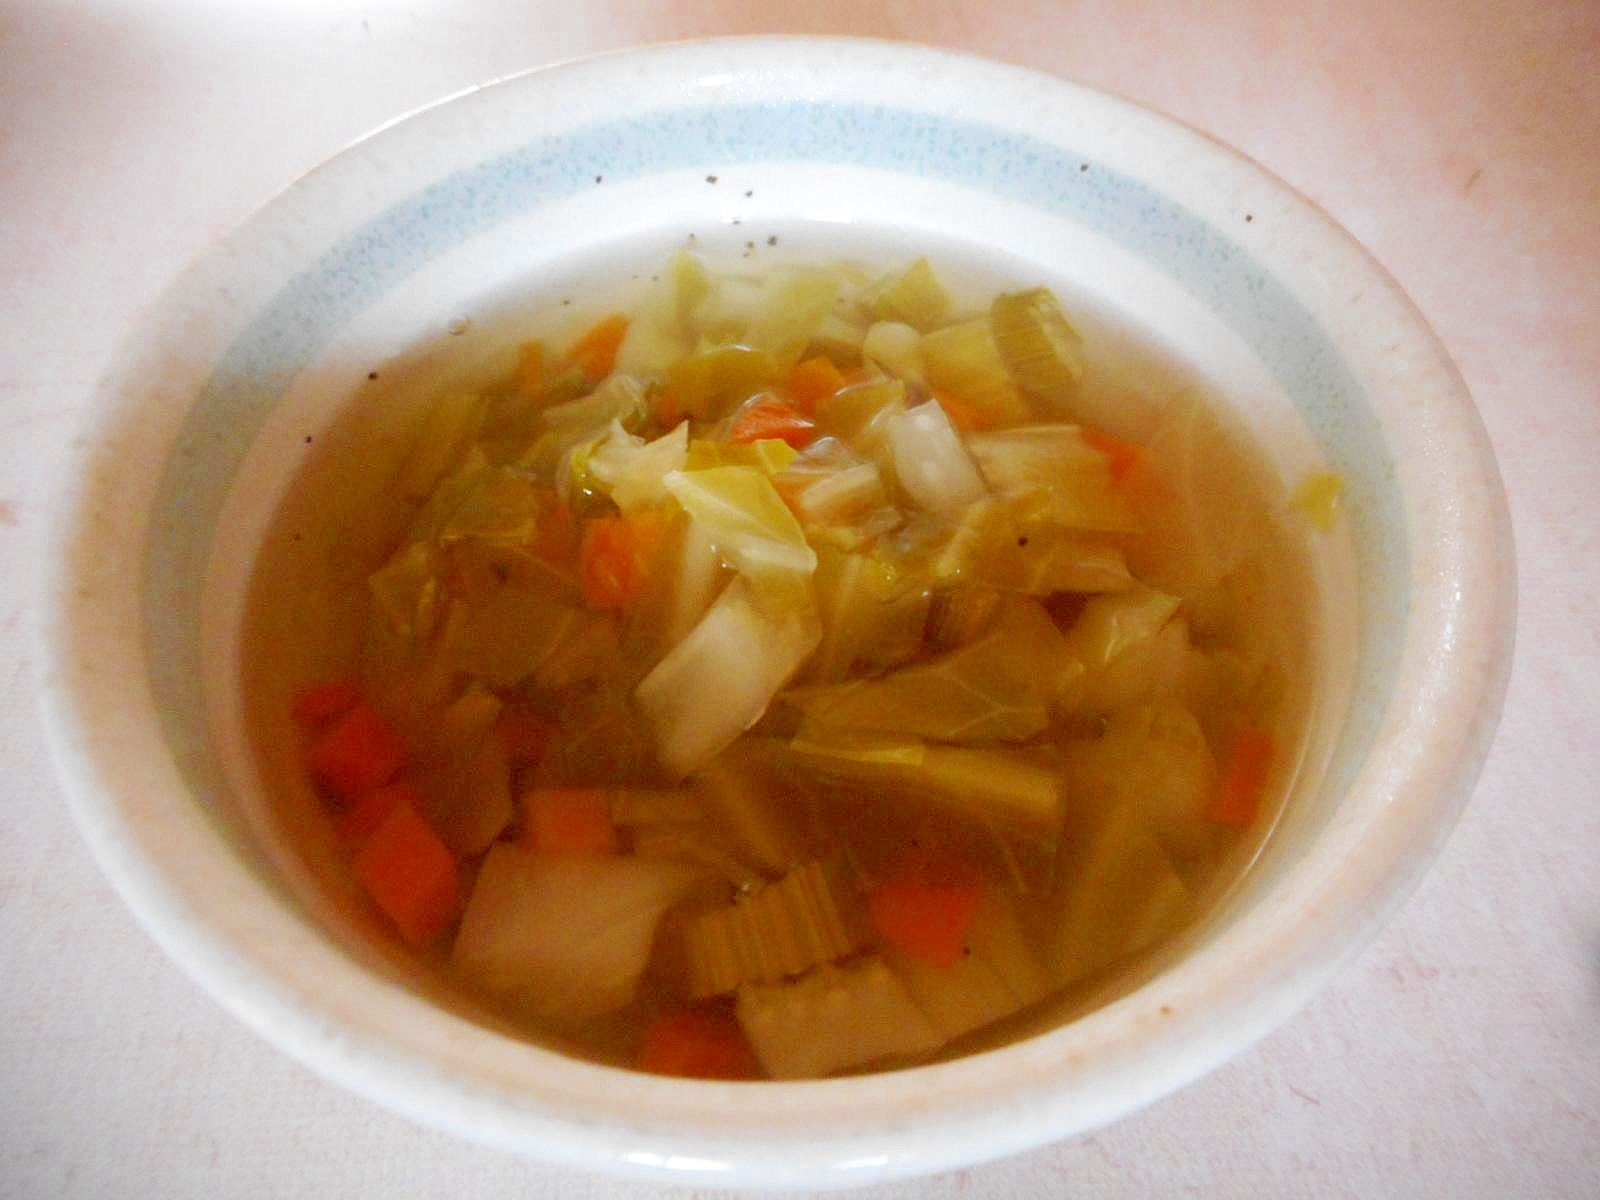 キャベツとセロリの野菜スープ